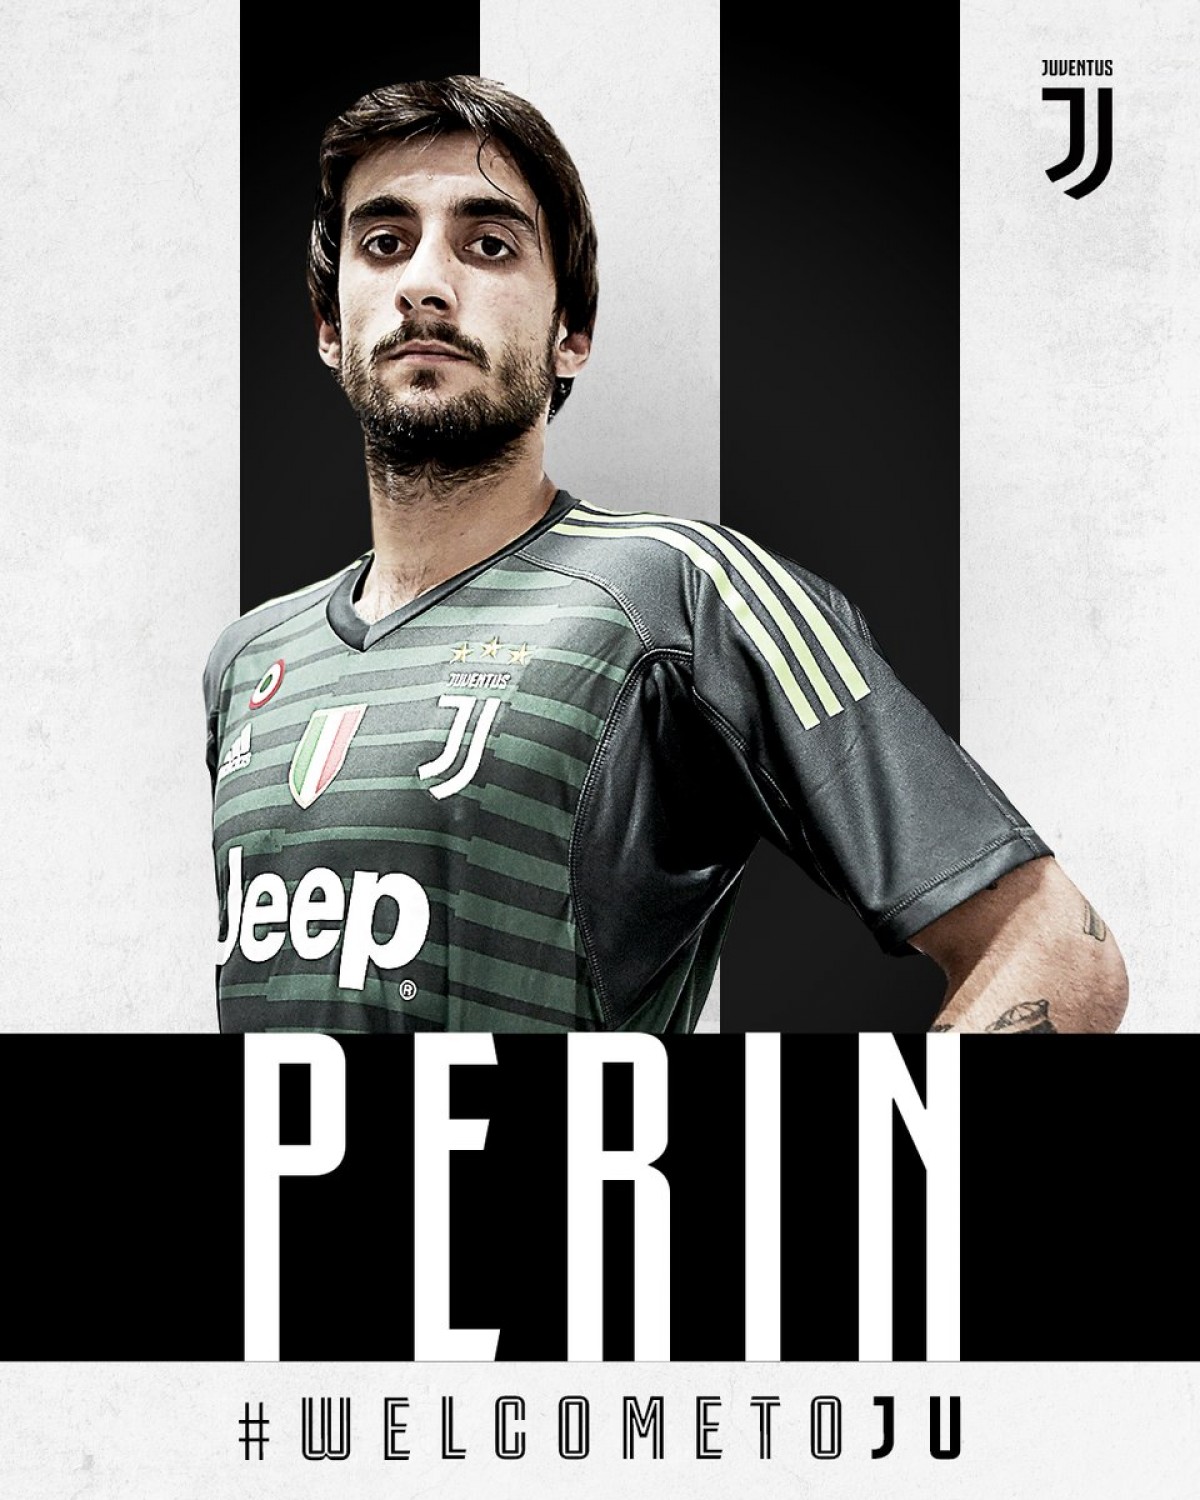 Juventus, ora è ufficiale: Perin è un nuovo giocatore bianconero